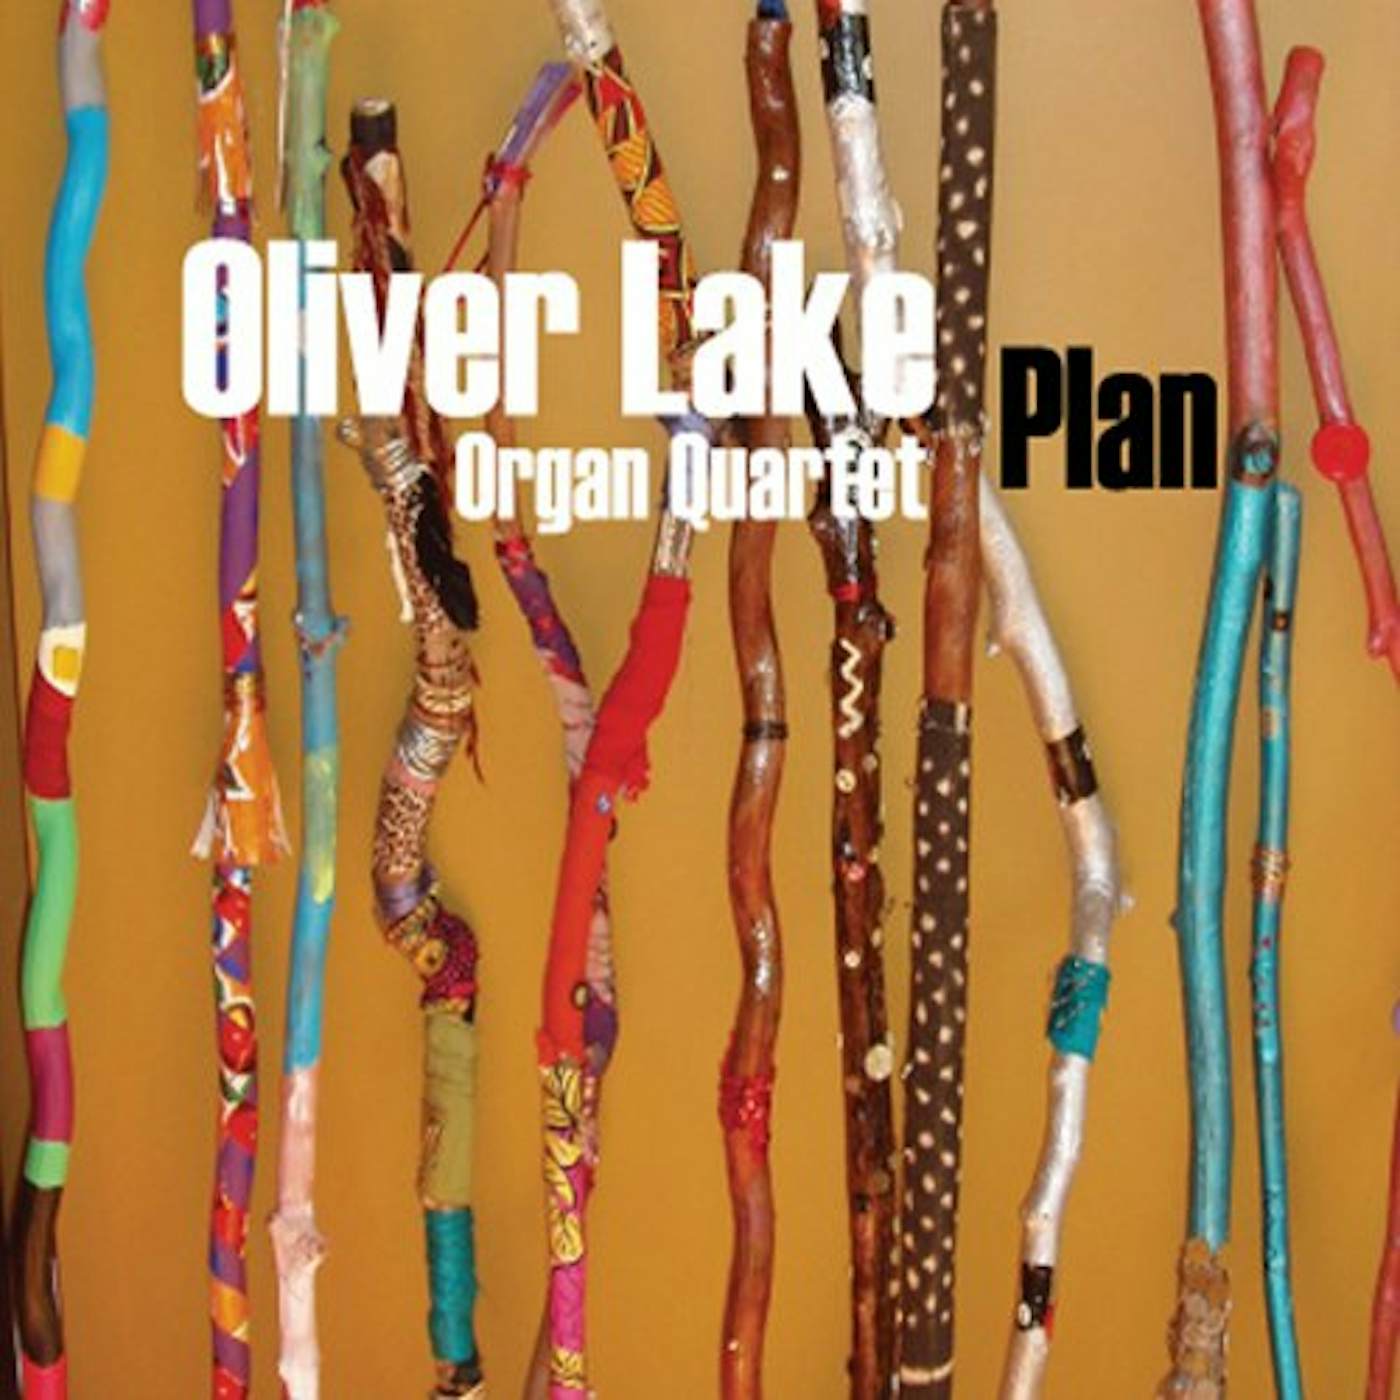 Oliver Lake PLAN CD